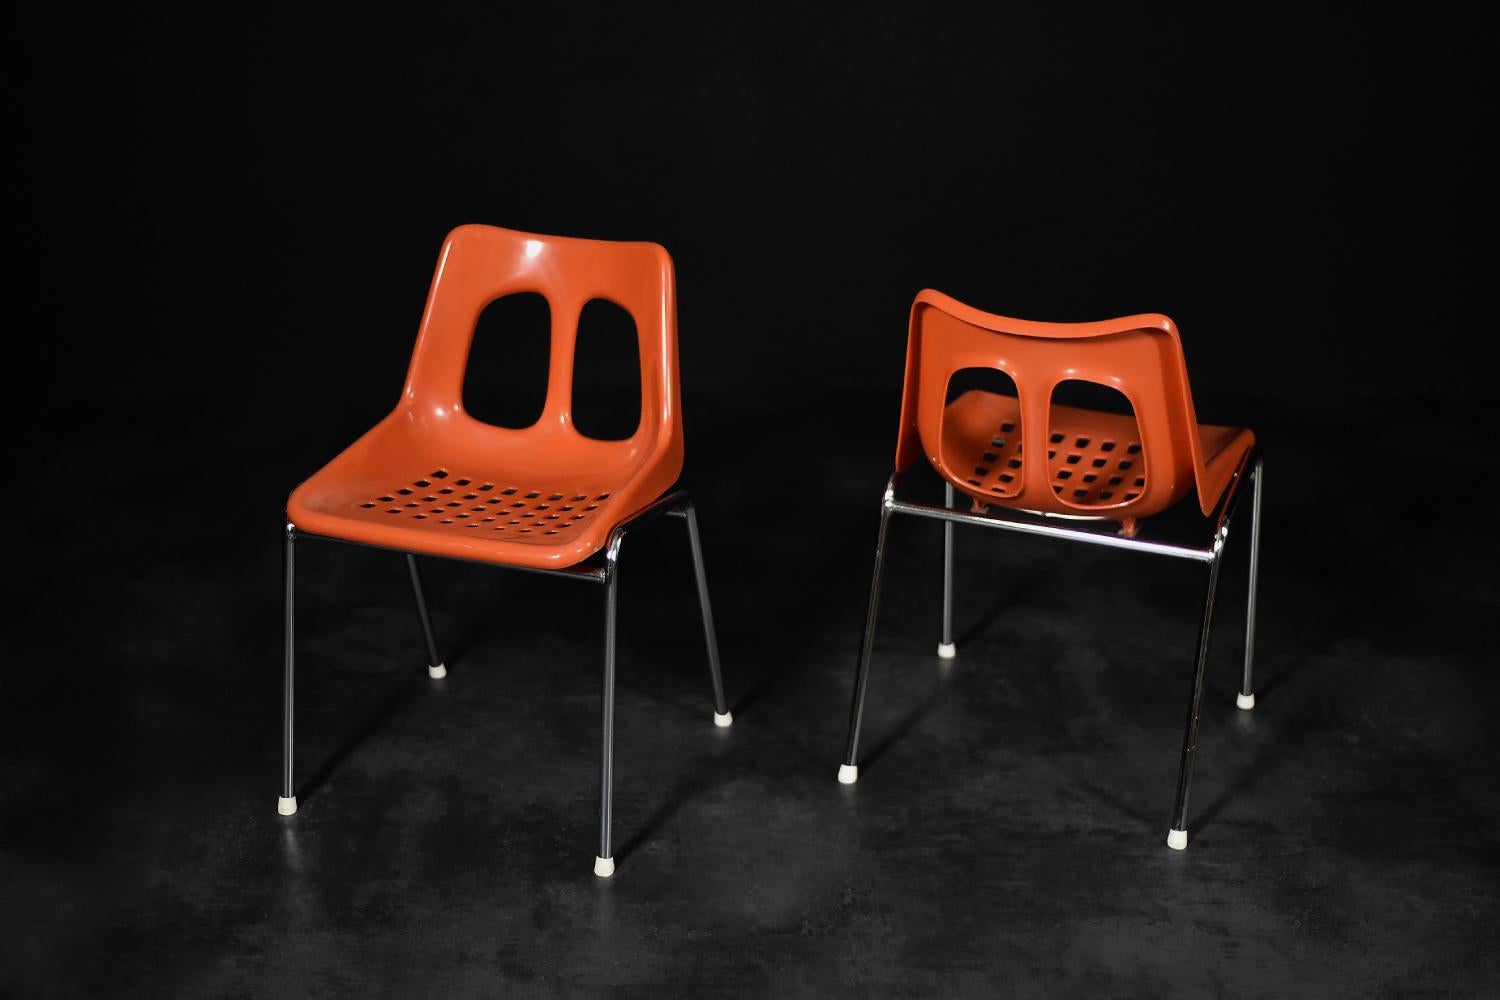 Dieses Paar modernistischer Stühle wurde in den 1960er Jahren von der israelischen Fabrik Plasson hergestellt. Der Sitz und die Rückenlehne sind aus orange-rotem Kunststoff geformt. Die schlanken Beine sind aus verchromtem Metall gefertigt. Die